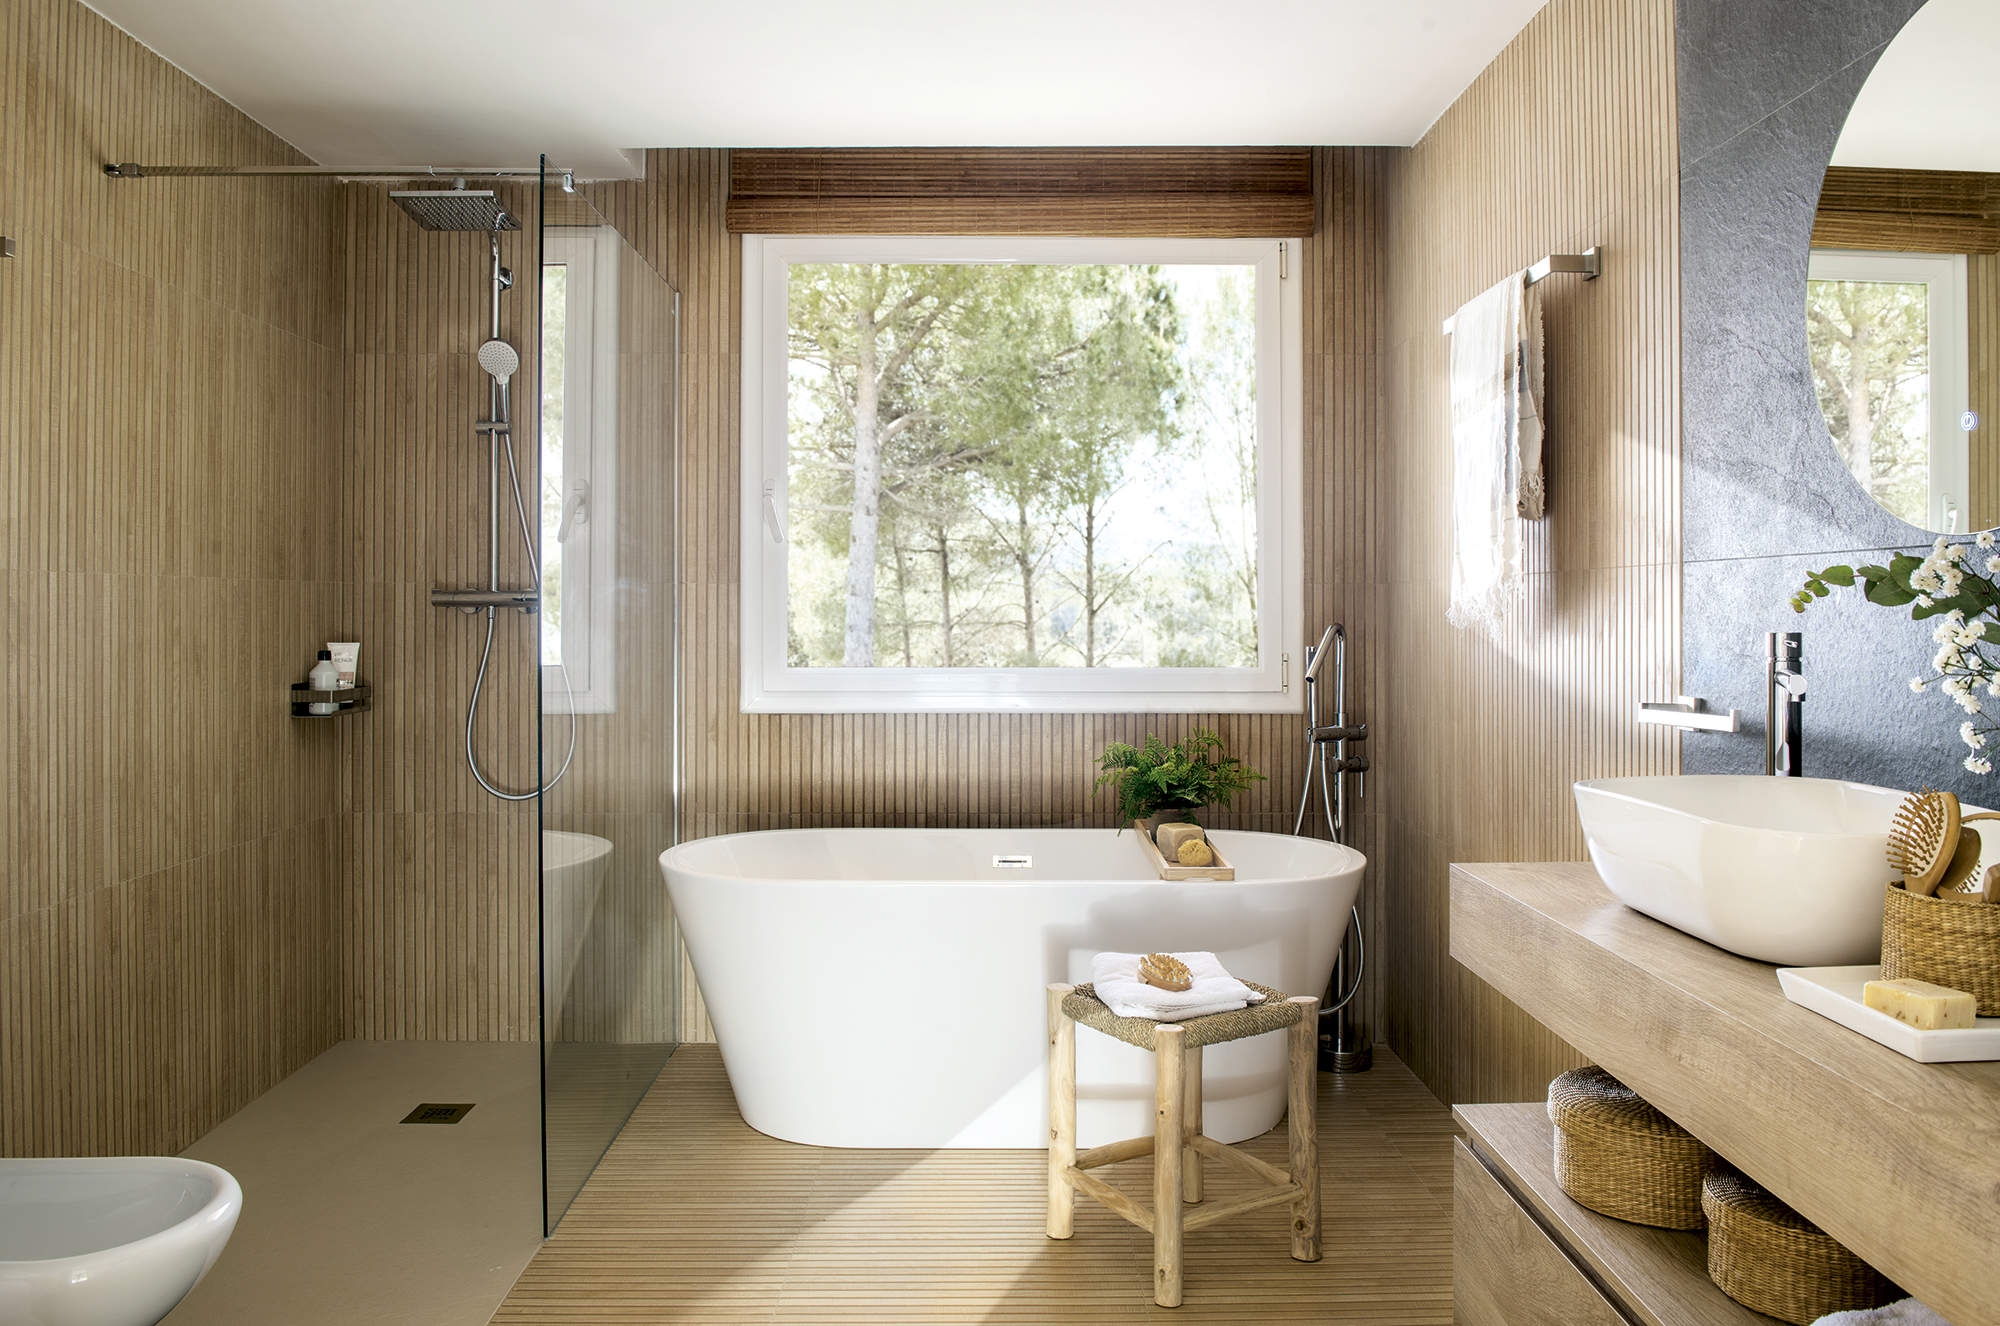 Baño amplio rústico moderno con bañera y ducha